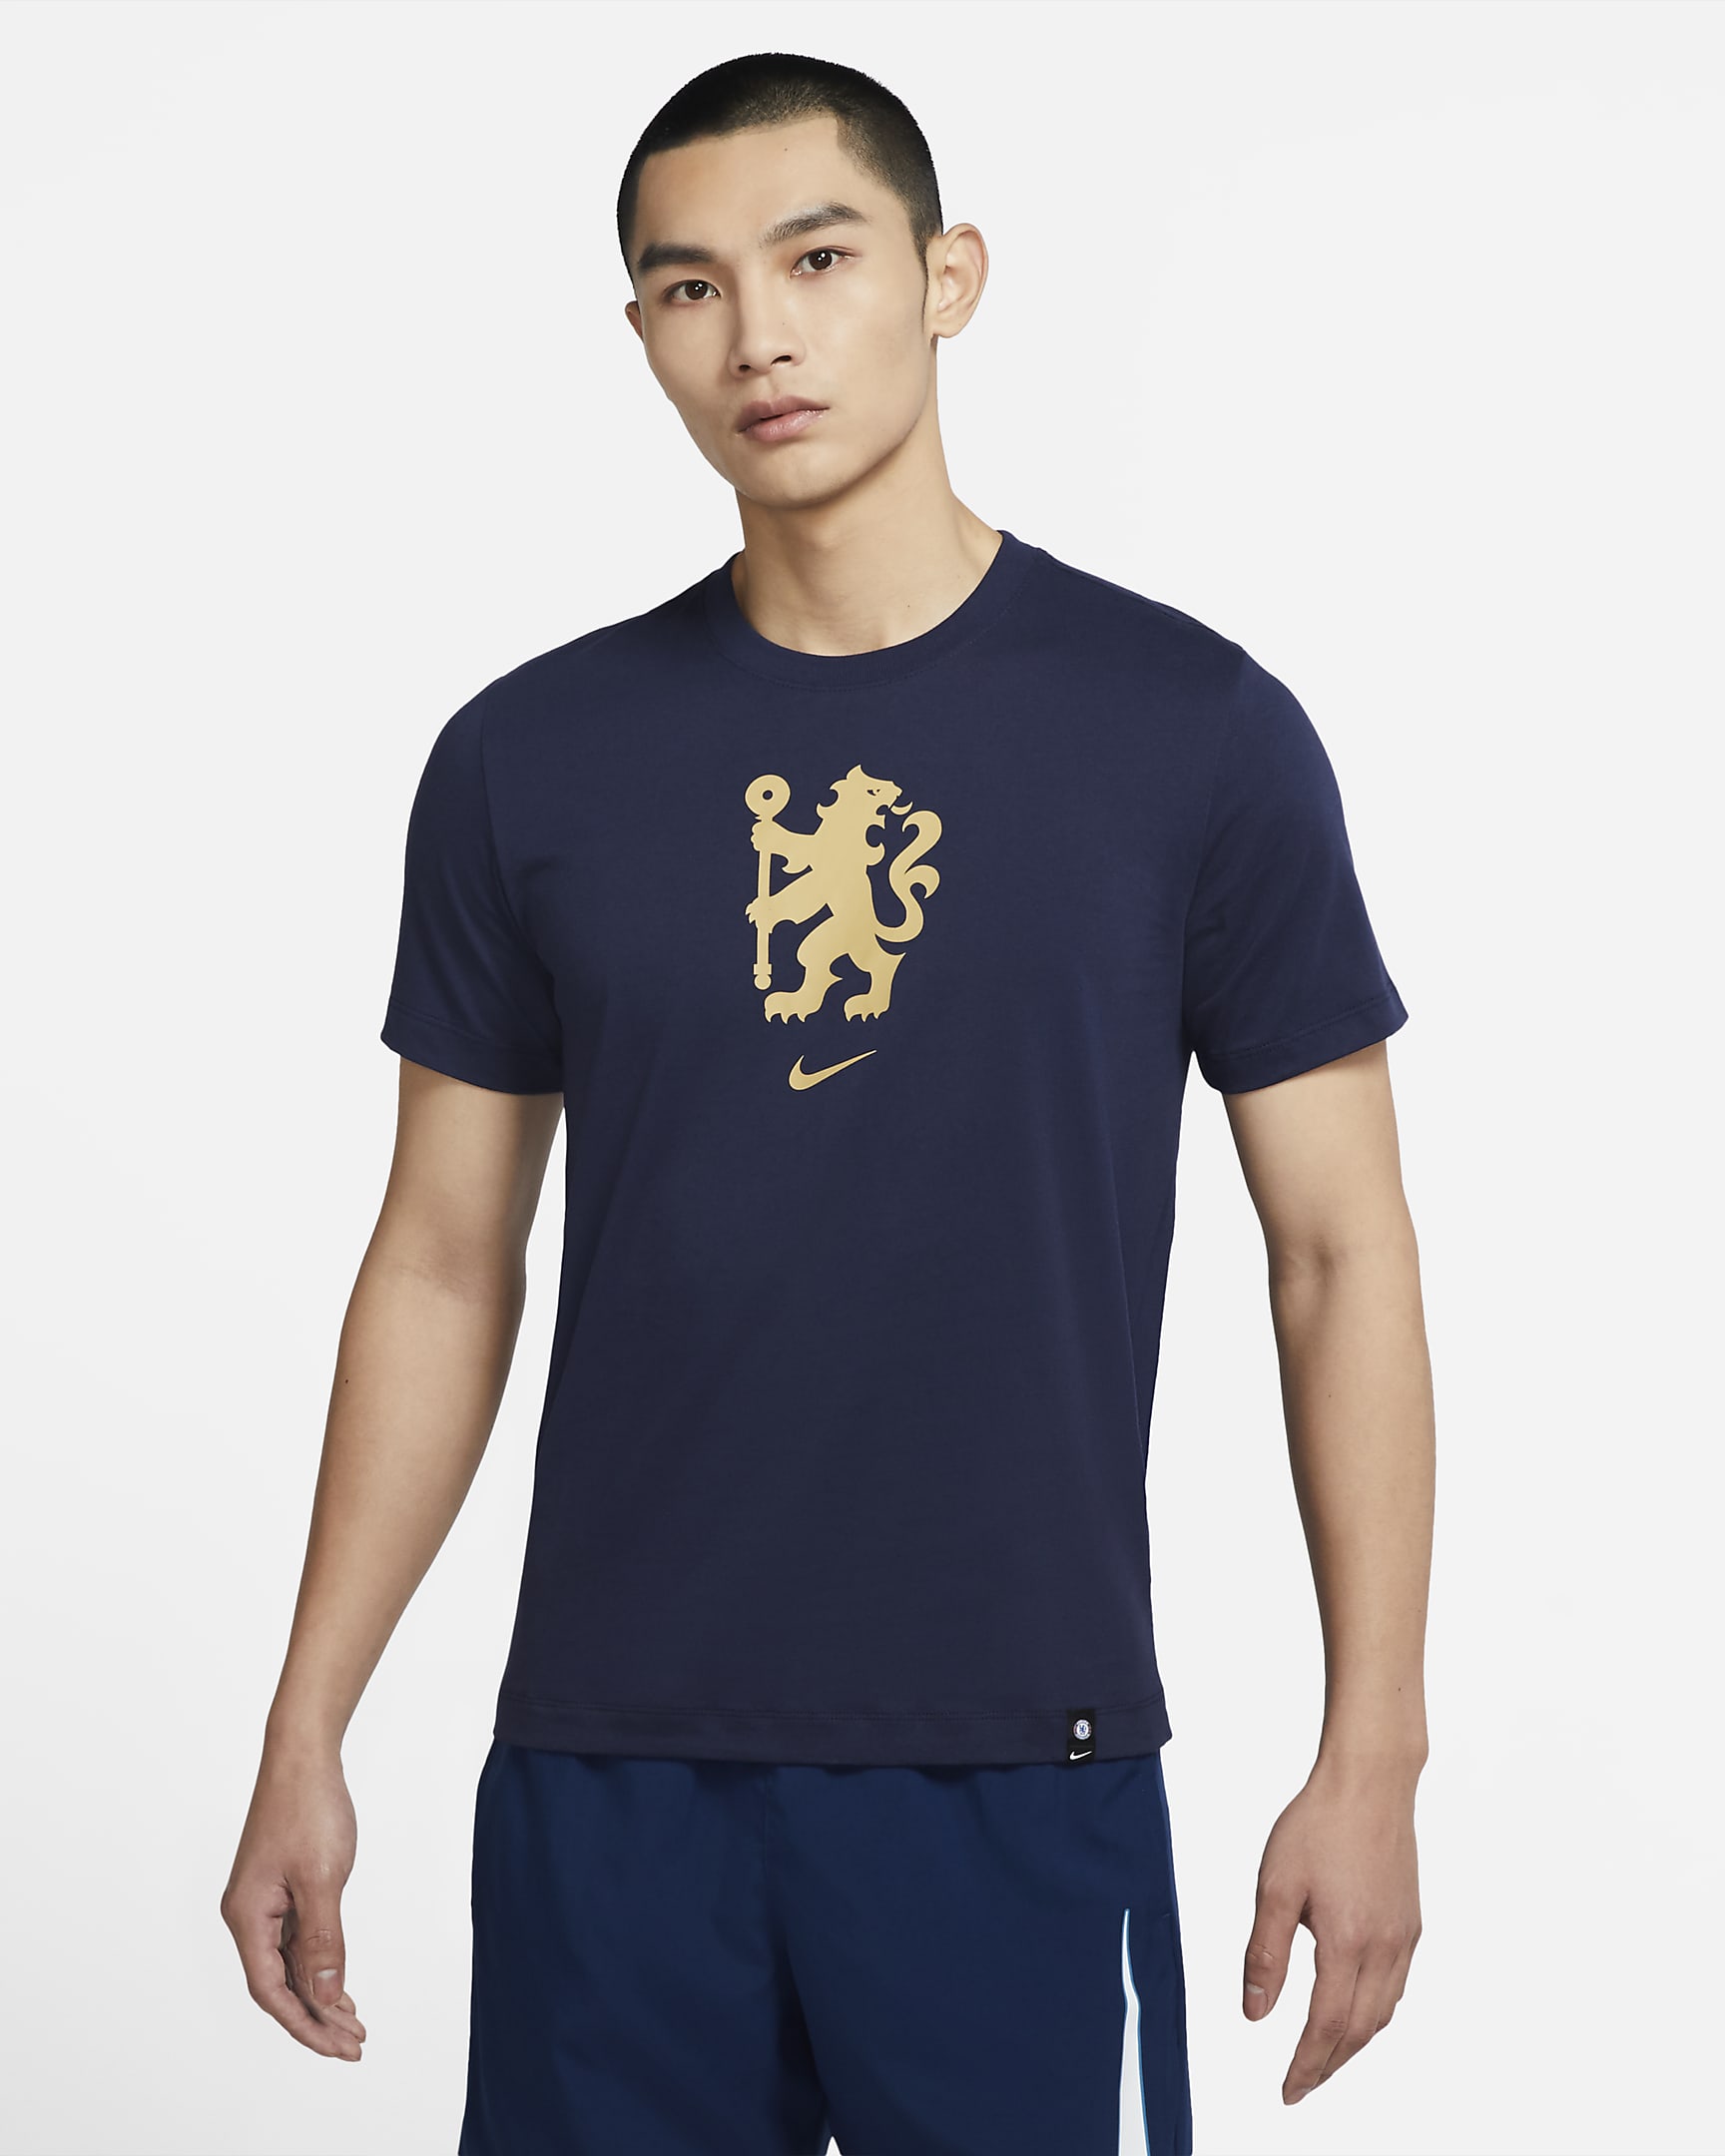 Chelsea FC Men's T-Shirt. Nike SG